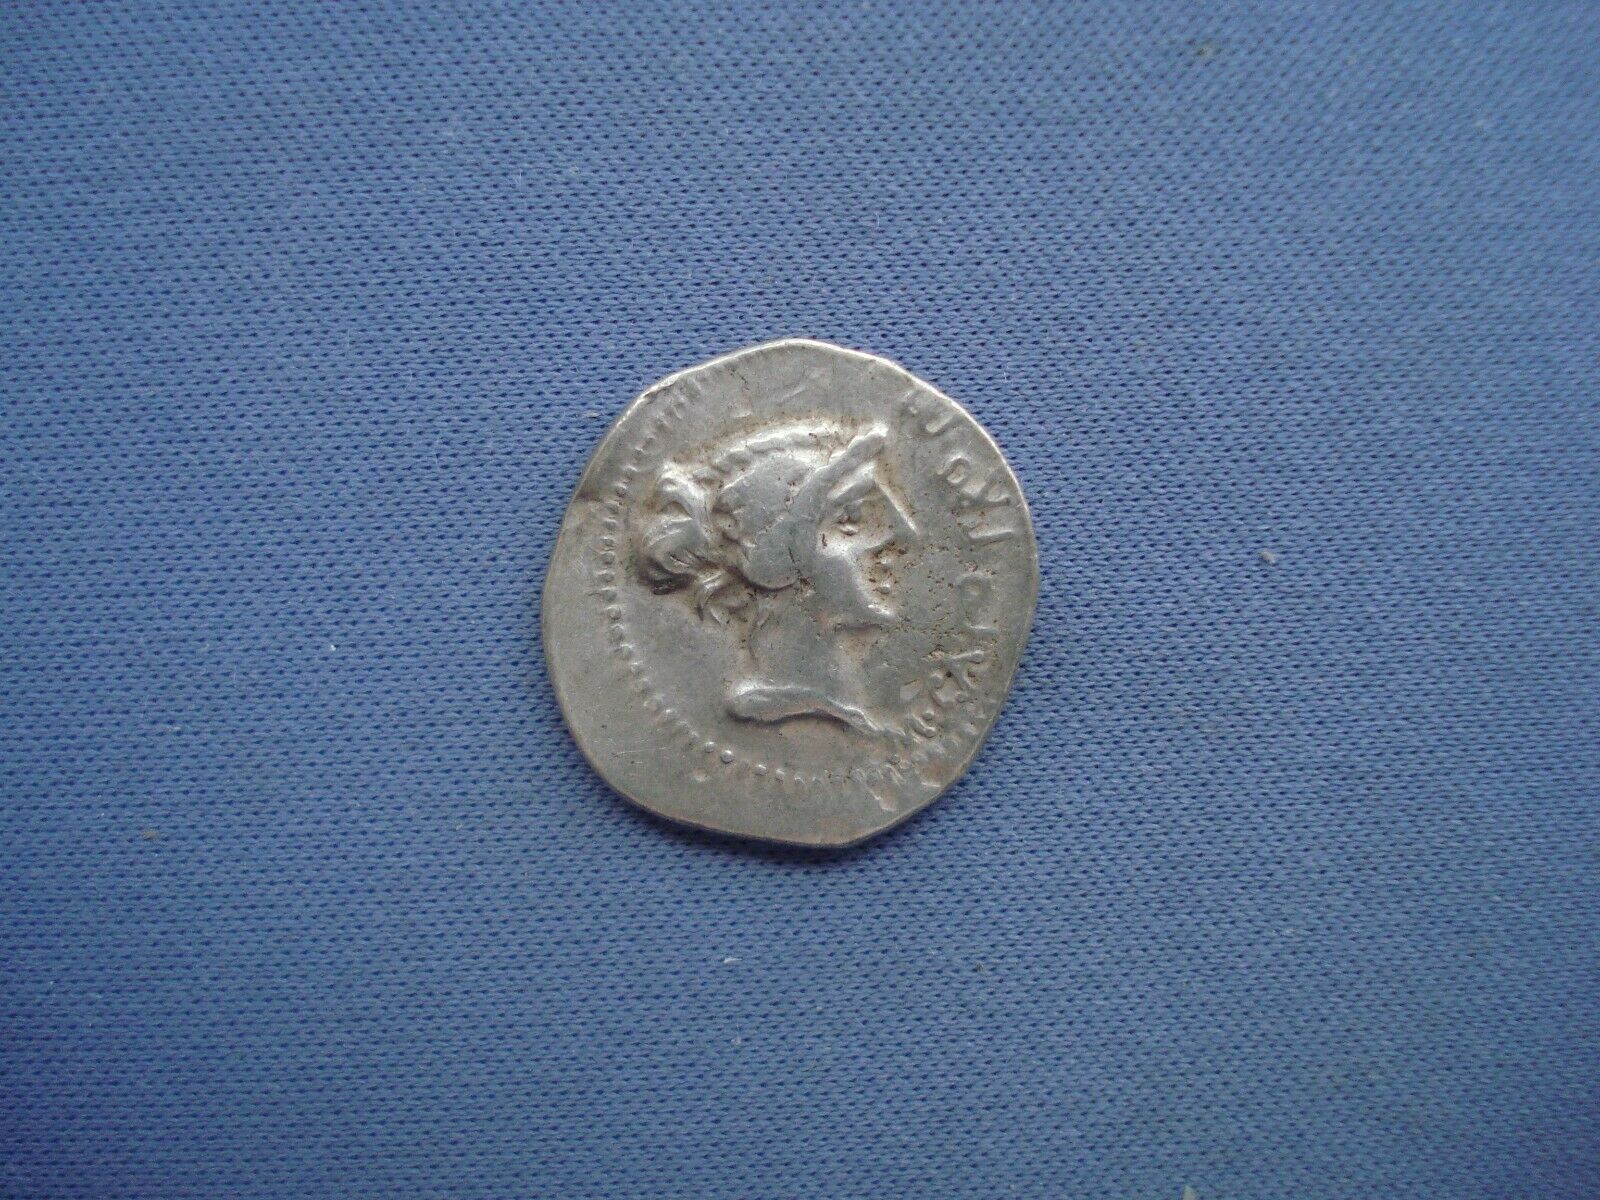 47-46 Bc  Roman Republic - M. Porcius Cato - Denarius - 78252